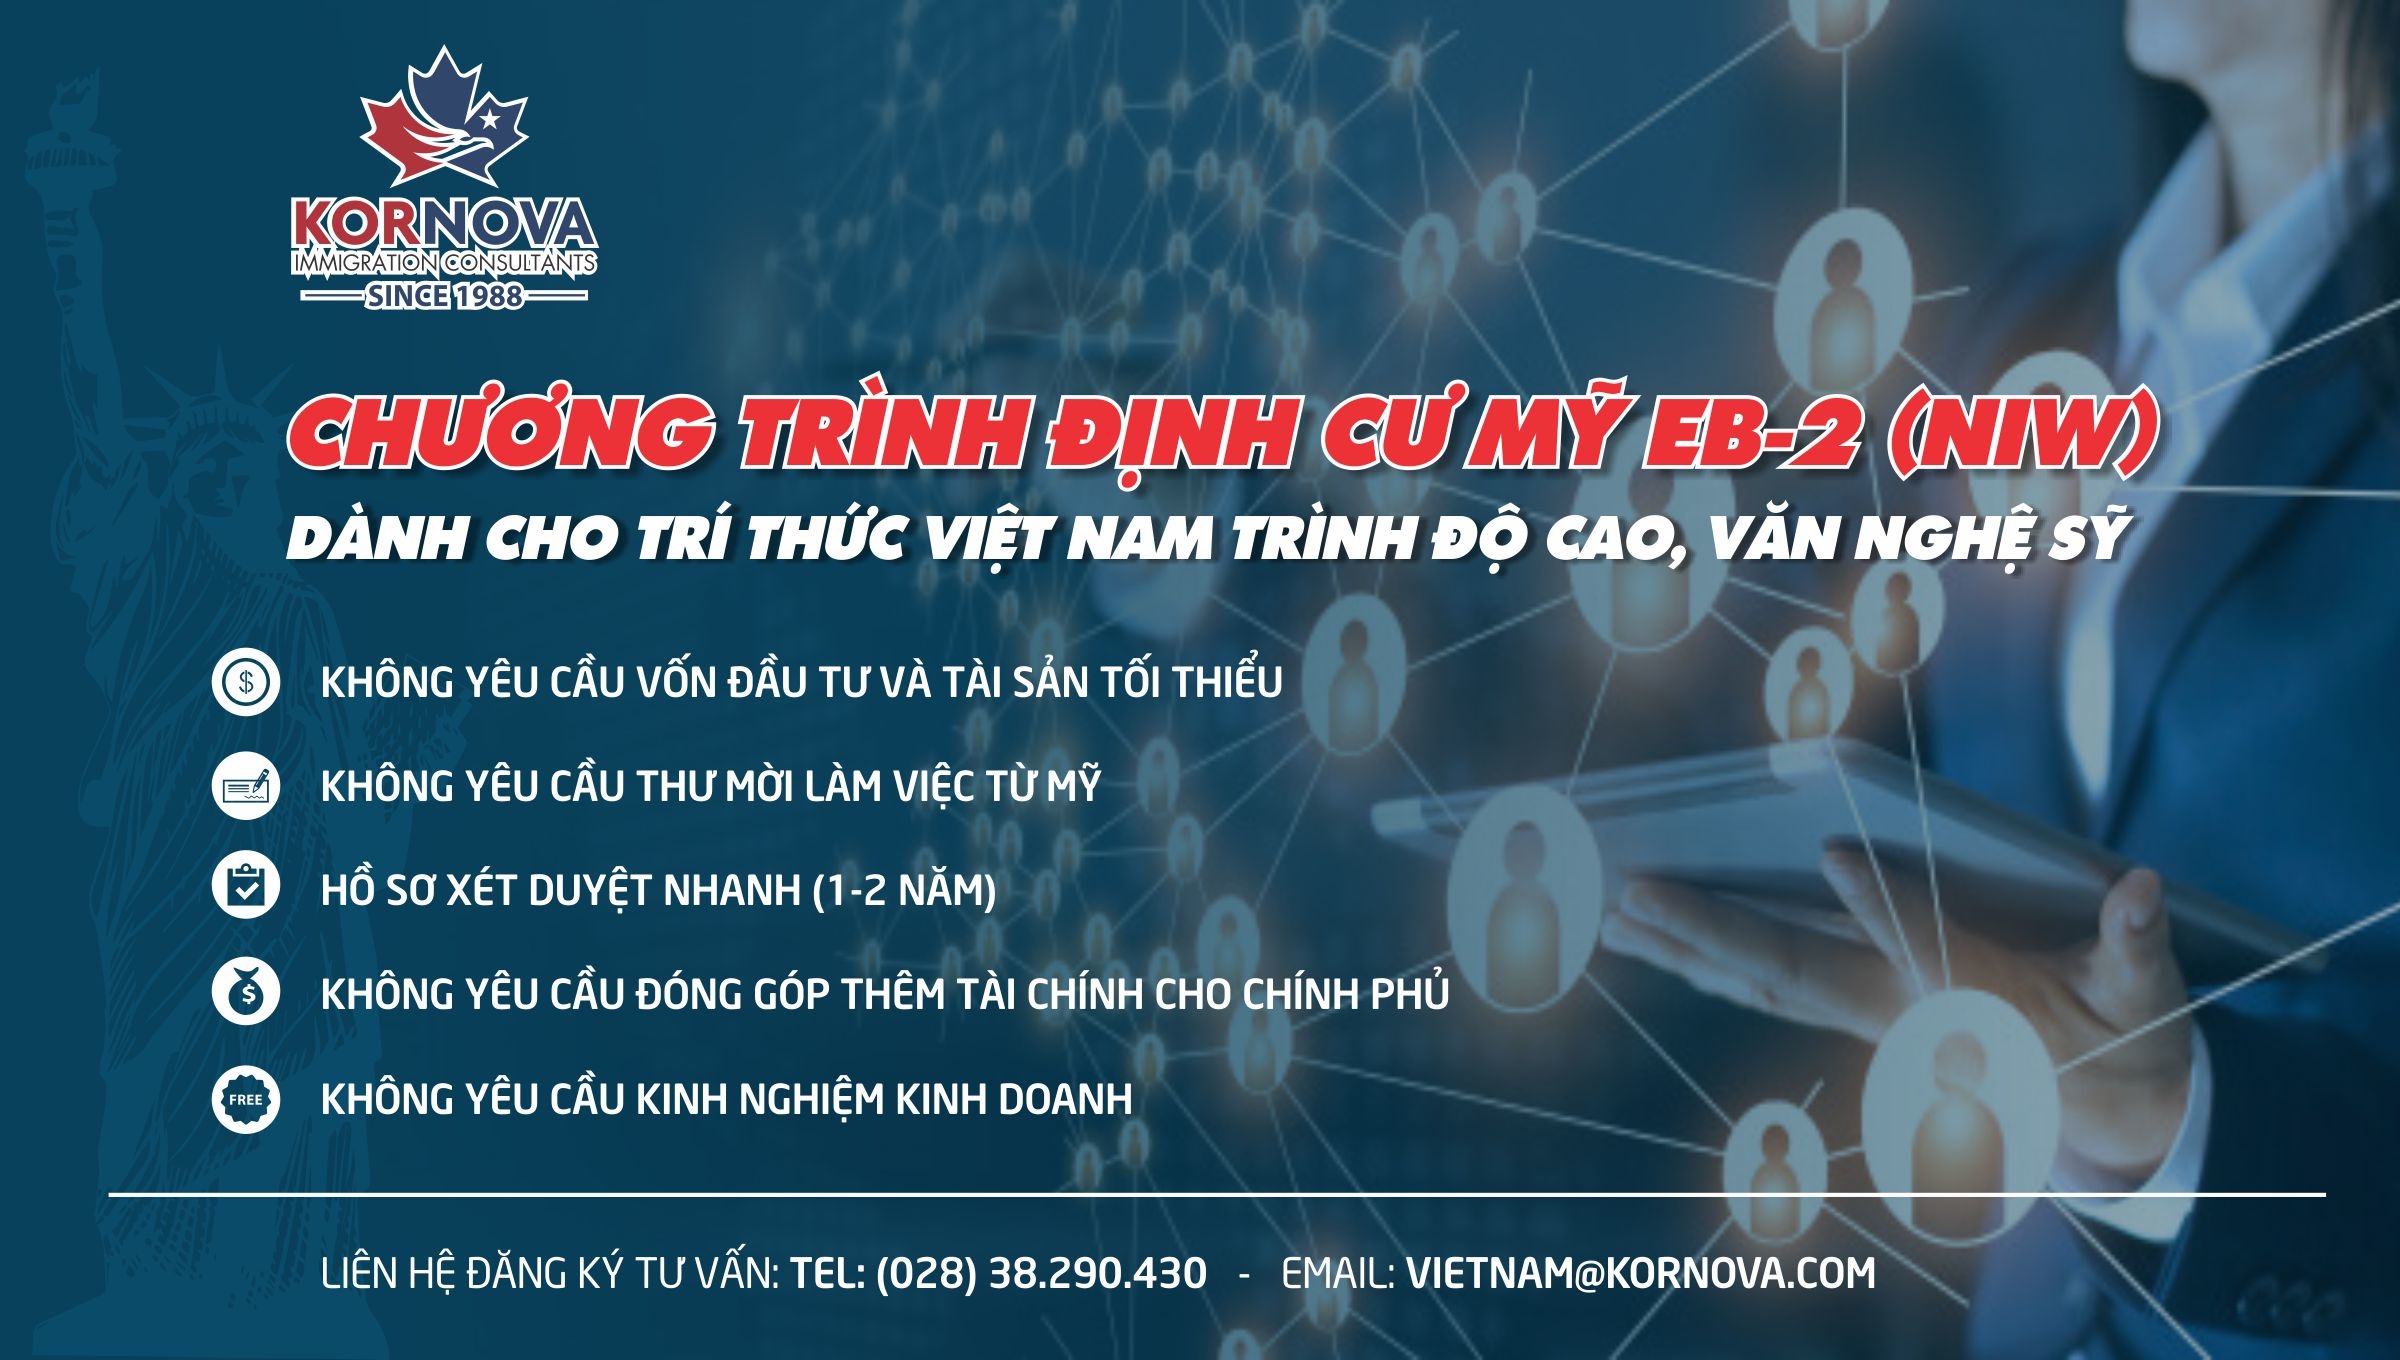 Khách Hàng Kornova Việt Nam Thành Công Với Chương Trình EB-2 (NIW)